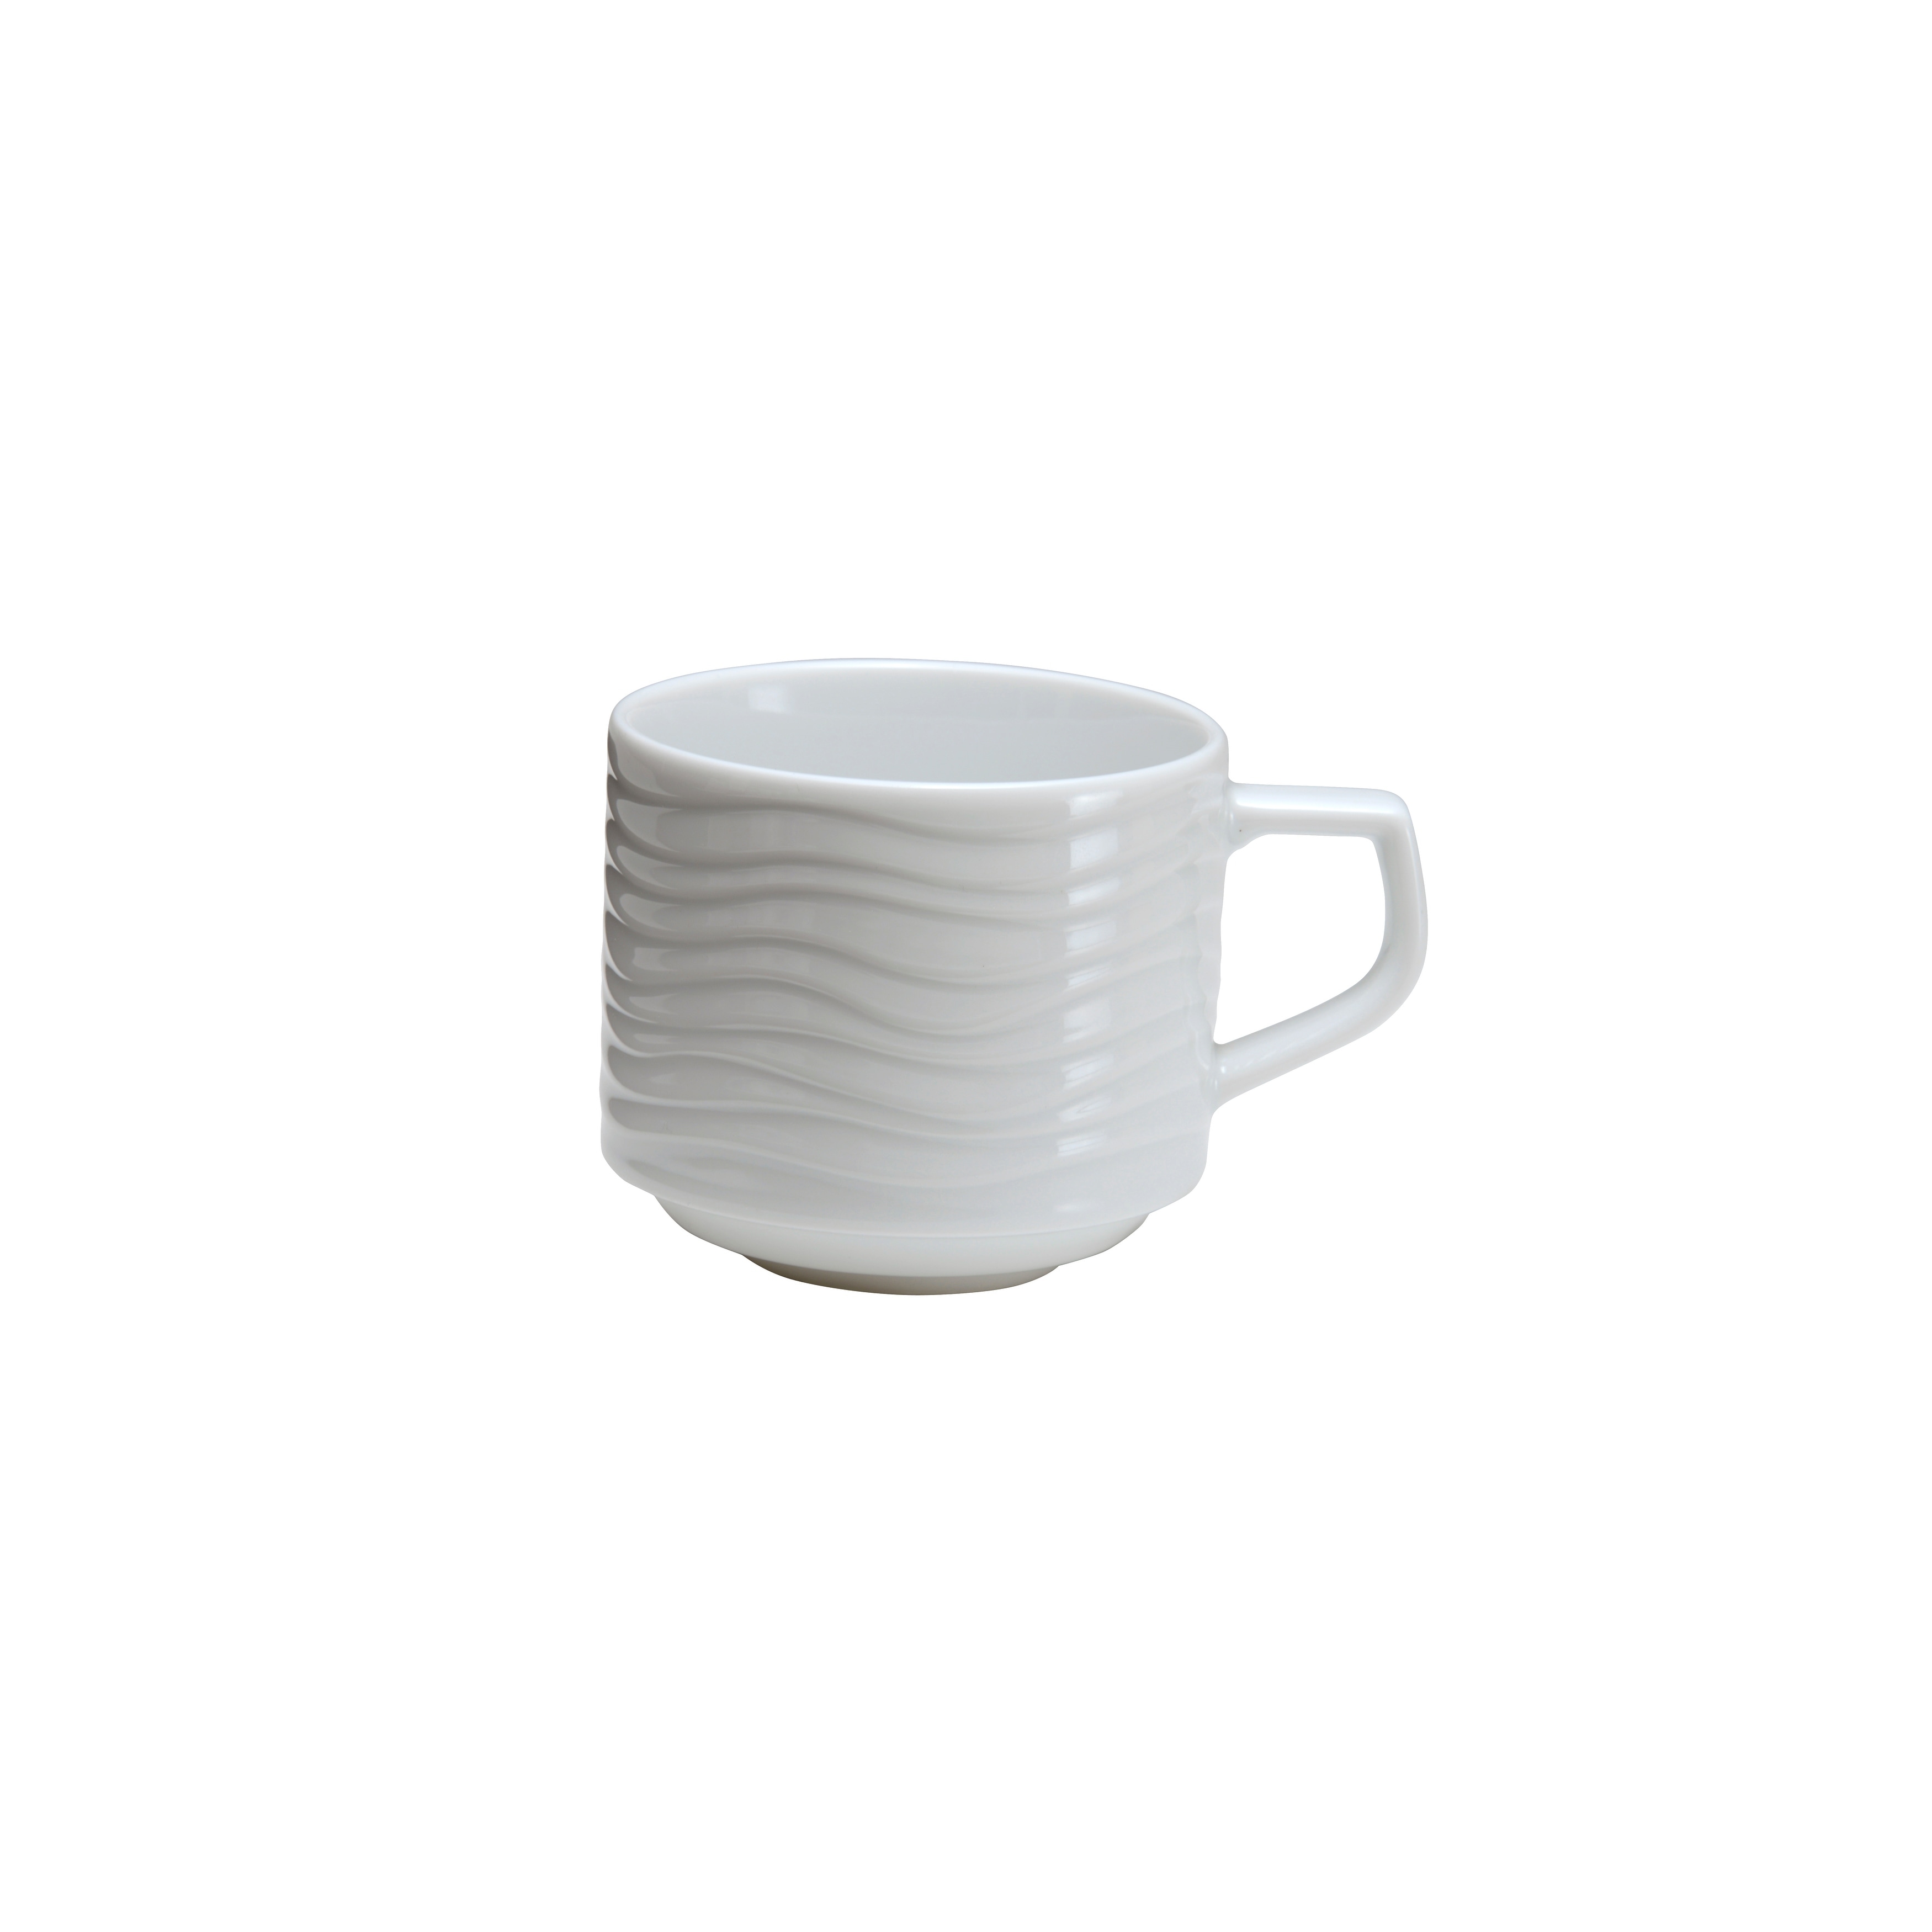 Handmade Stacking Ceramic Cups, 4 Oz, 8 Oz, 12 Oz, 16 Oz, Espresso